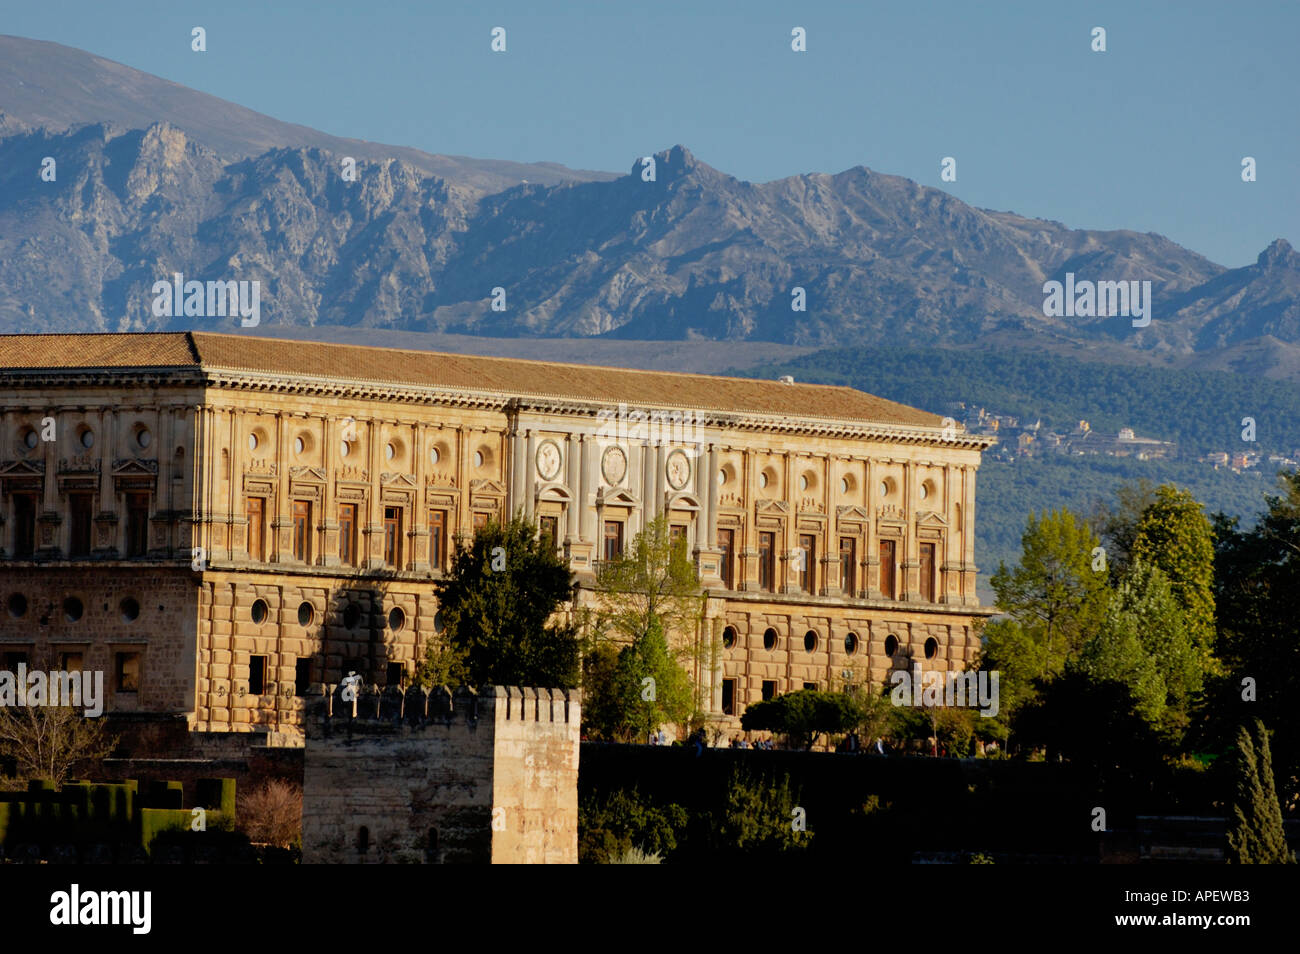 Palacio De Carlos V / Palast Karls v., Alhambra, Granada, Spanien Stockfoto